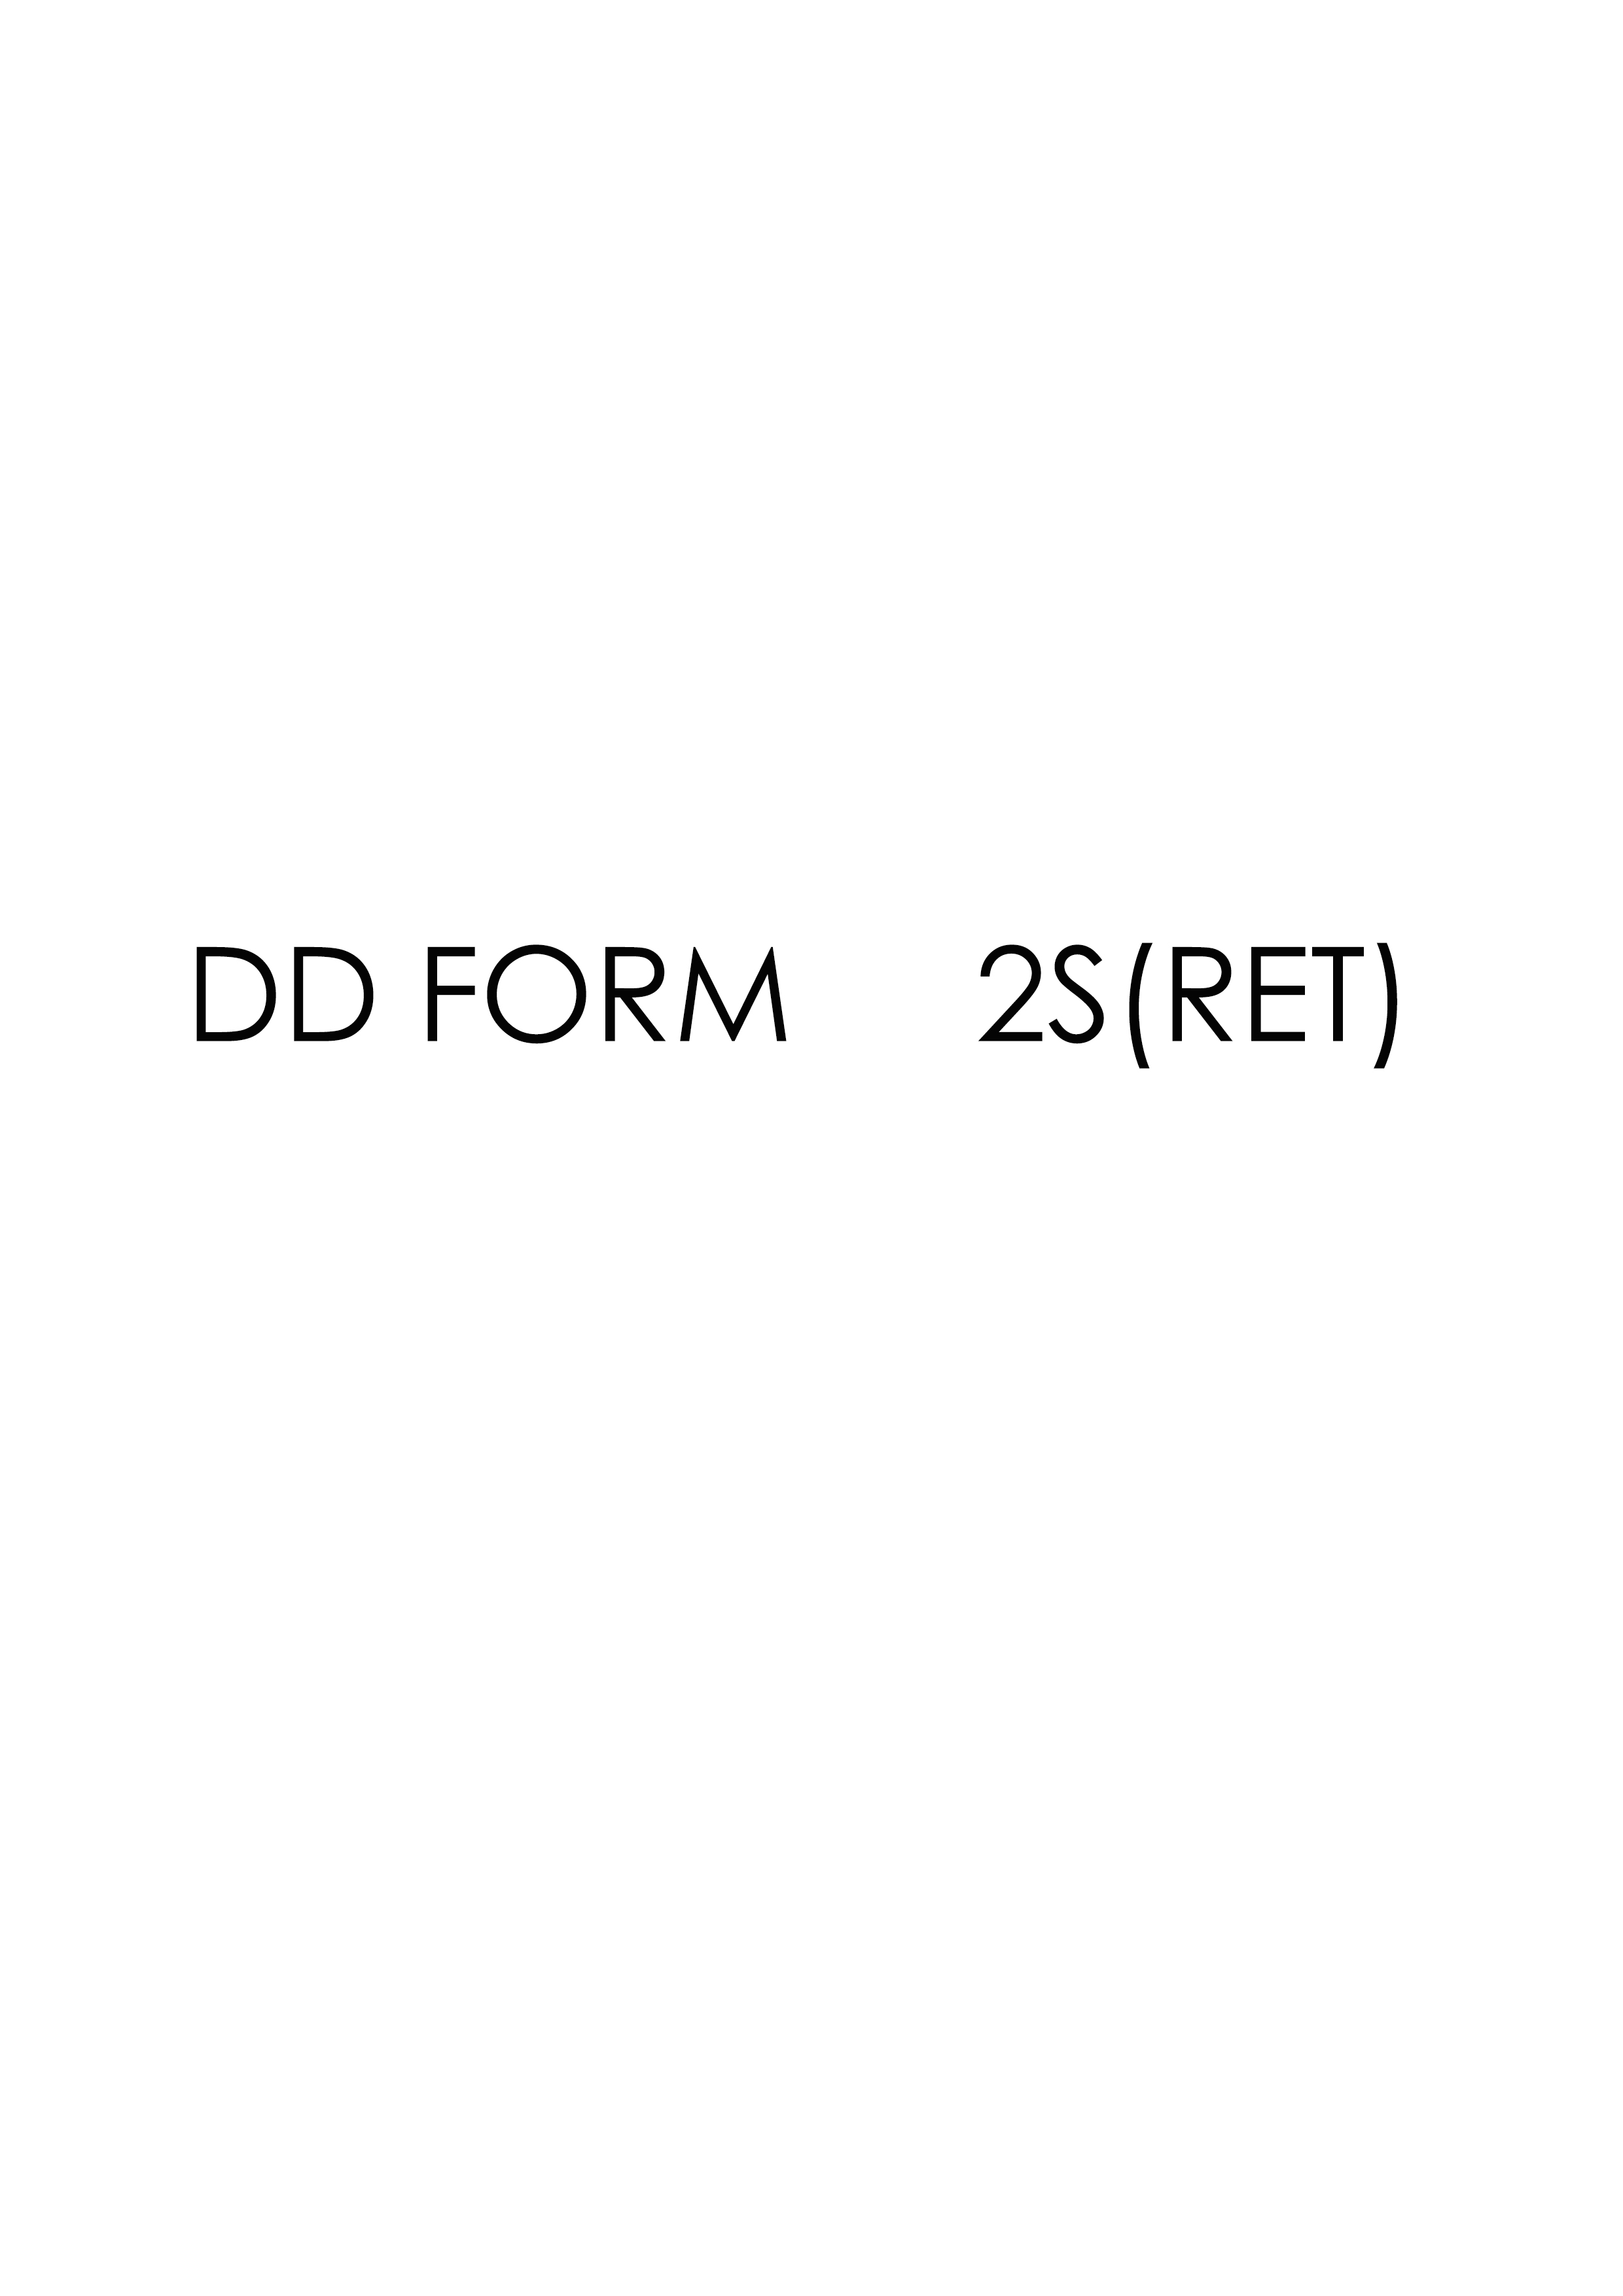 Download dd 2S(RET) Form